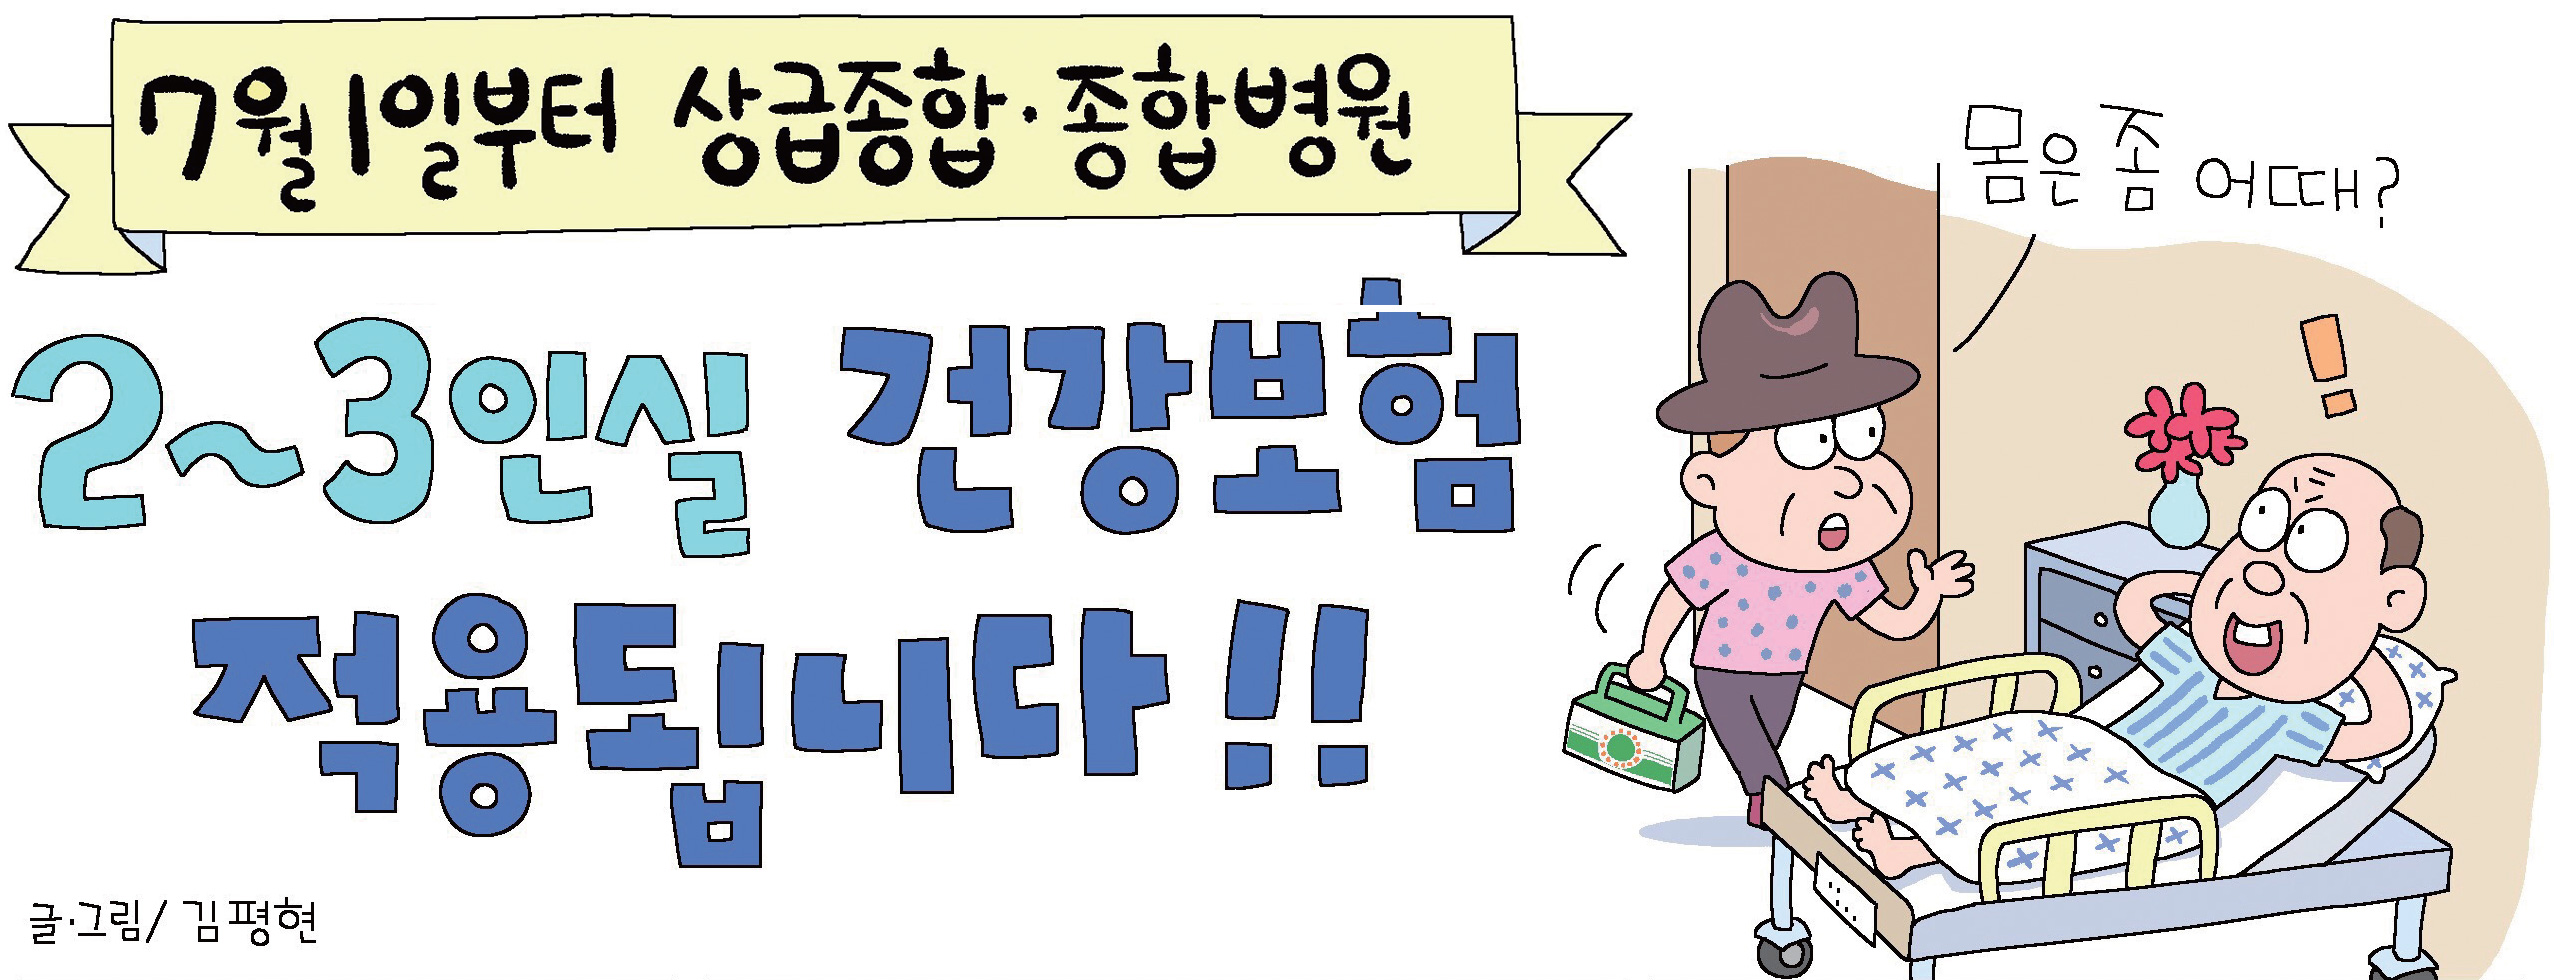 7월 1일부터 상급종합·종합병원 2~3인실 건강보험 적용됩니다!! '몸은 좀 어때?' 글.그림/김평현